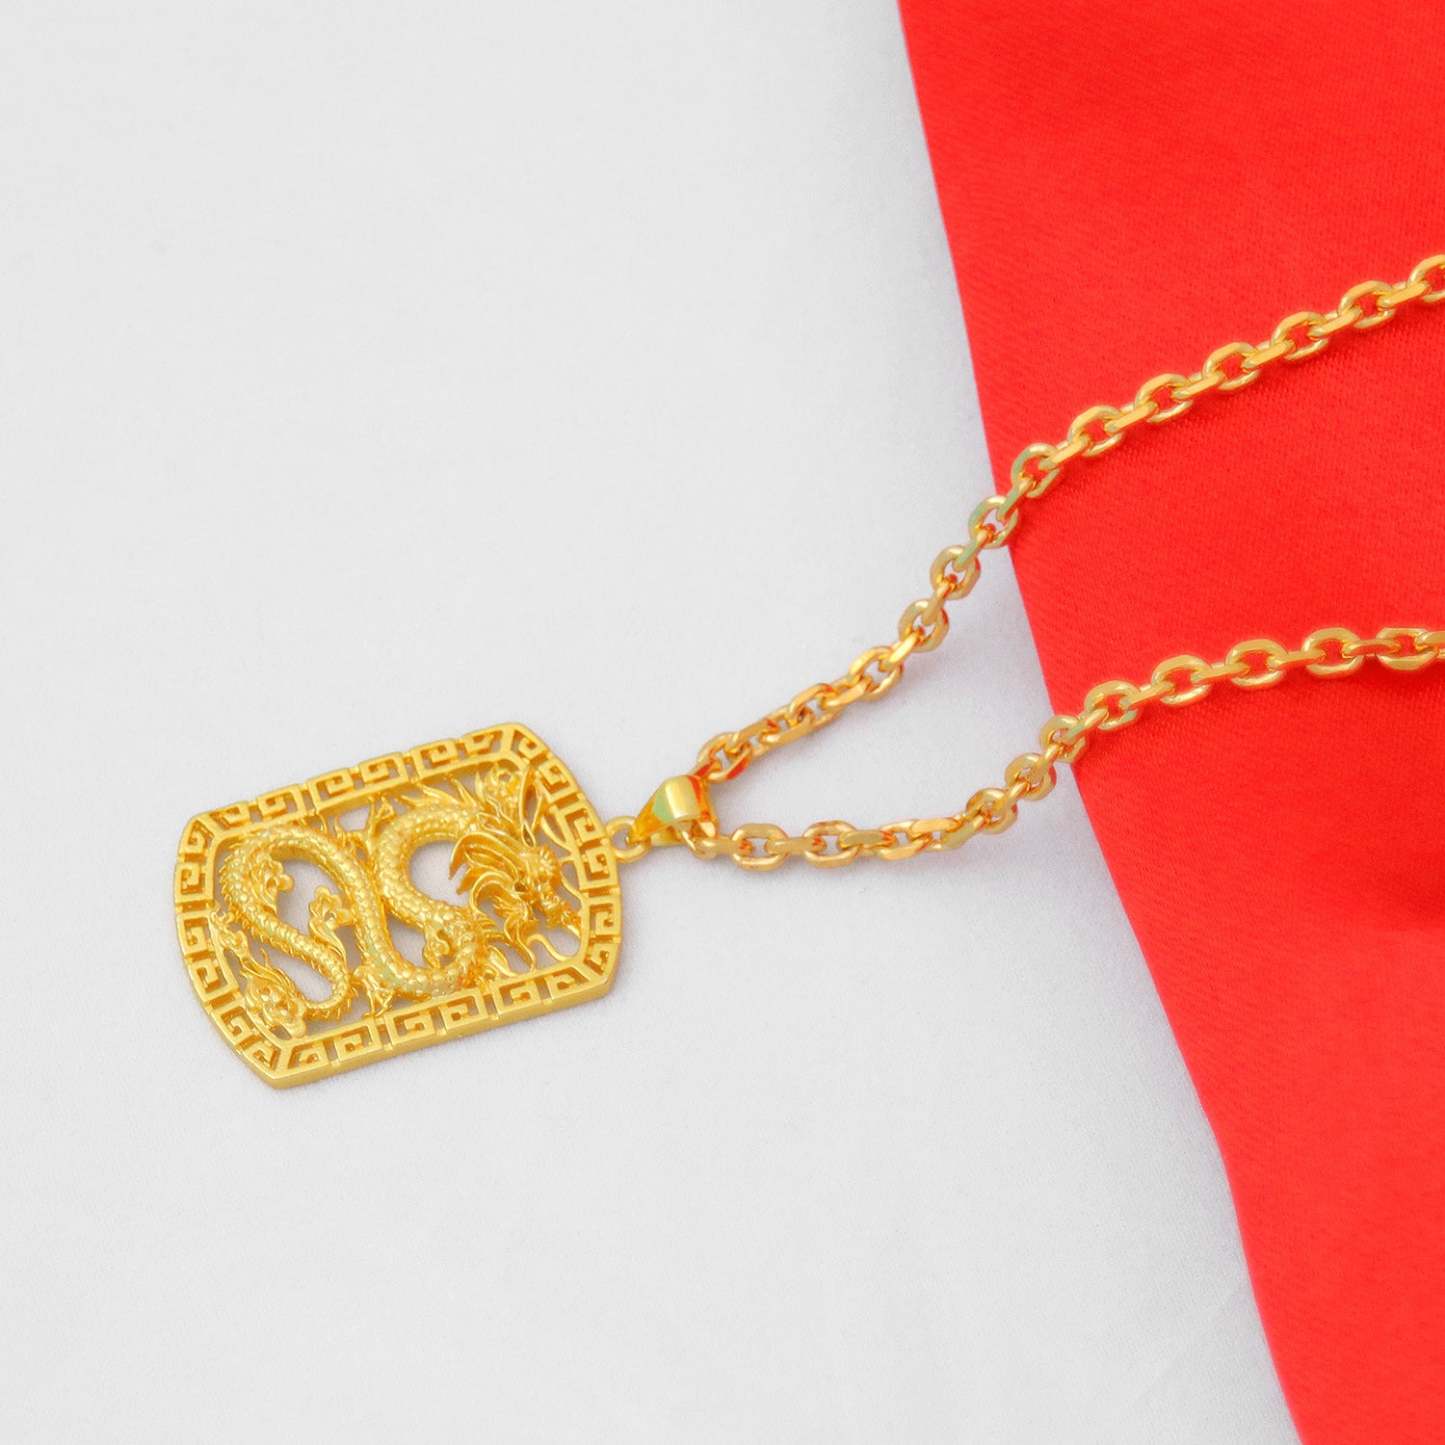 Domineering Golden Dragon Necklace Hip-hop Trendy Men's Jewelry - soufeelus